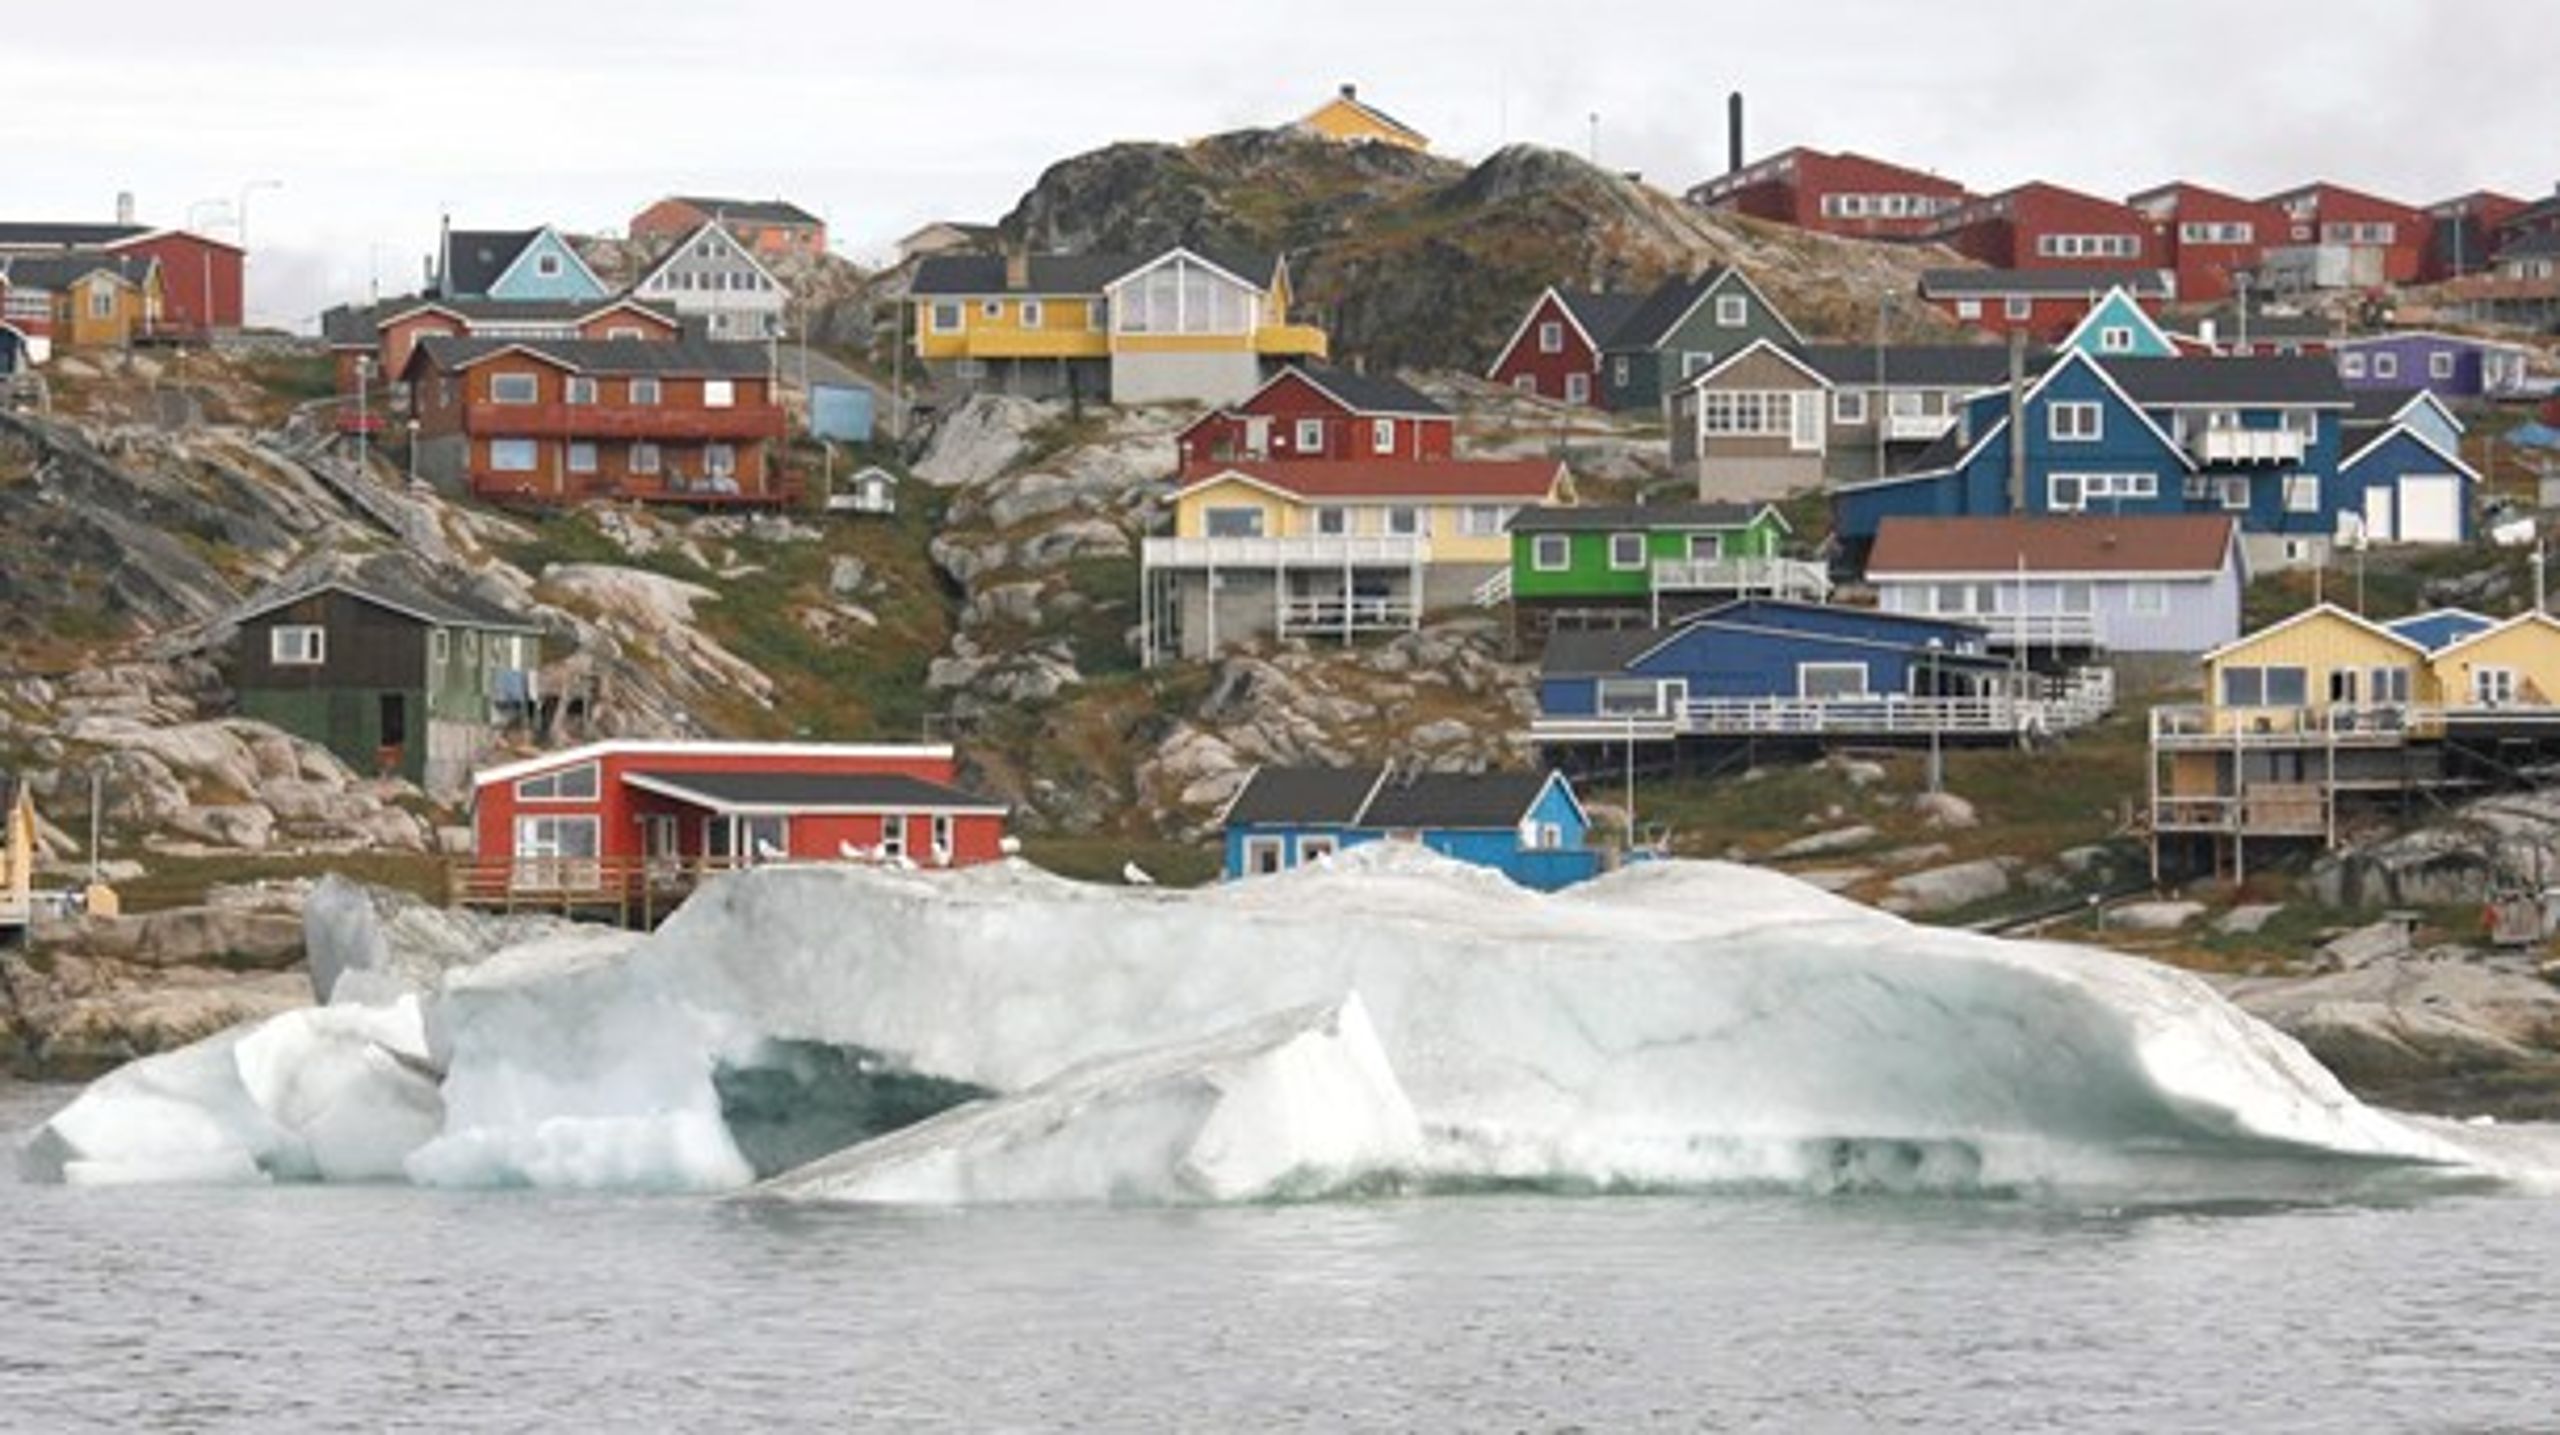 Kina ville aldrig forære kapital til Grønland uden at få uspiselige indrømmelser til gengæld, mener debattør.